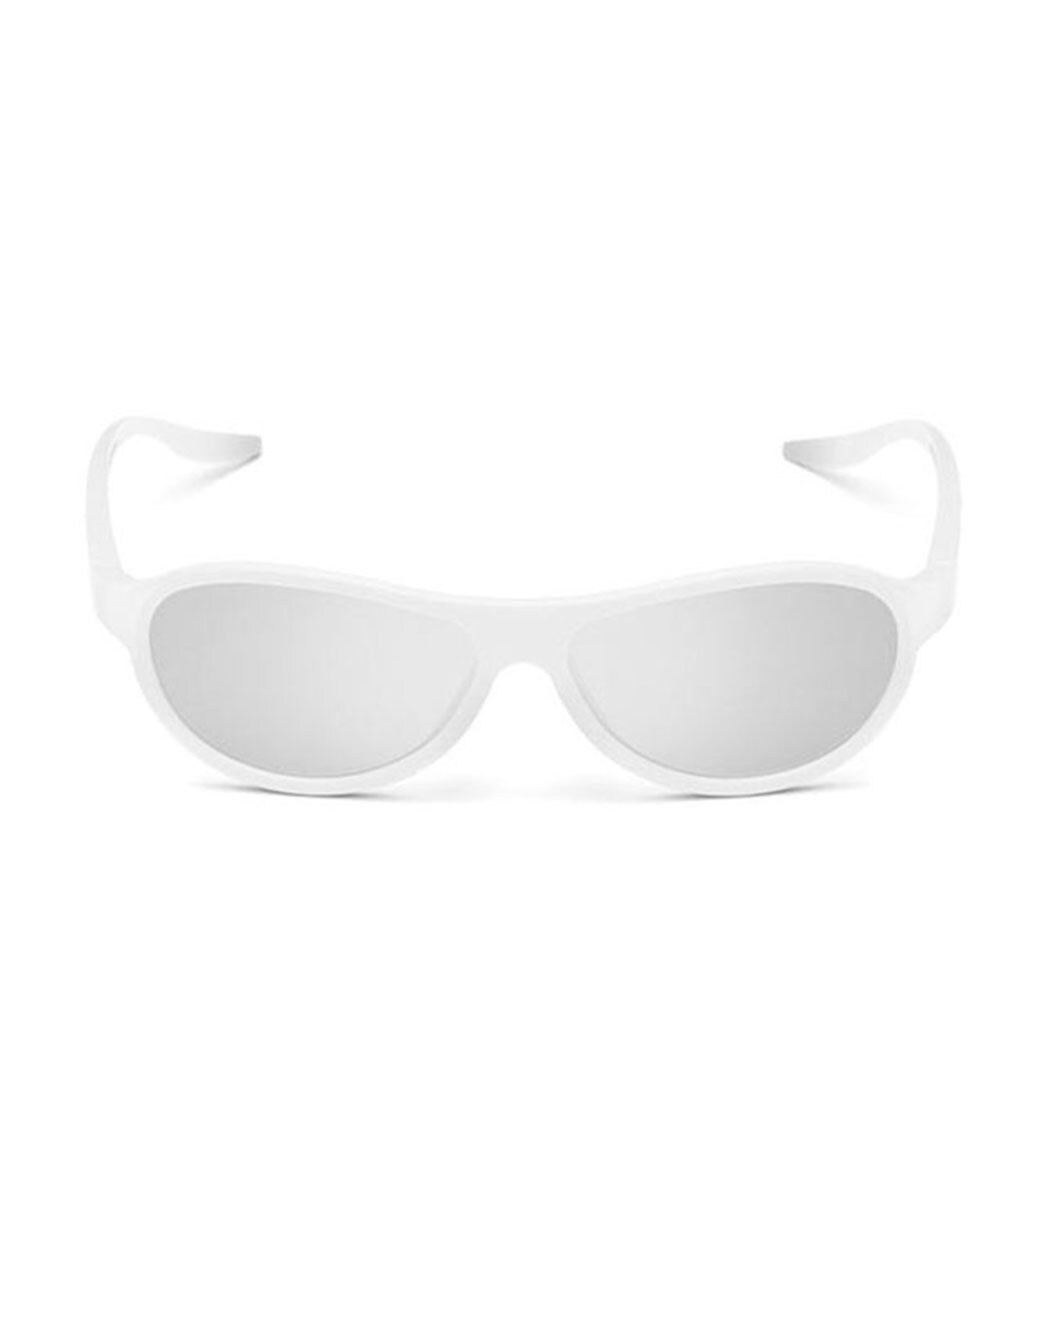 LG 4 Pack - LG Cinema 3D Glasses (AG-F315) | LG USA